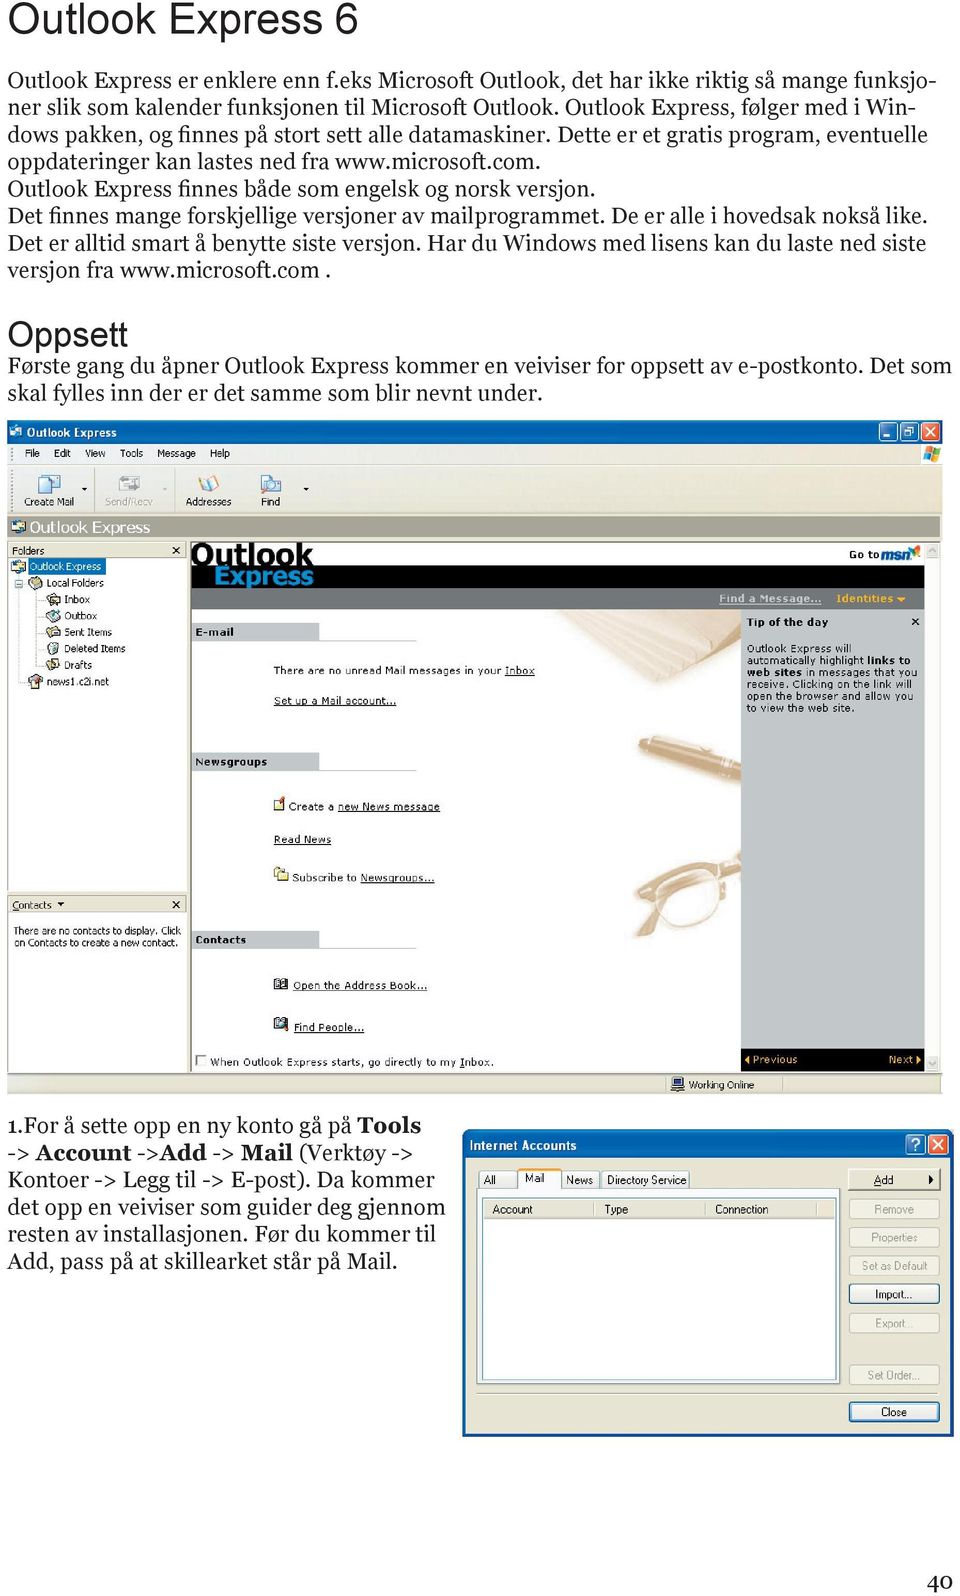 Outlook Express finnes både som engelsk og norsk versjon. Det finnes mange forskjellige versjoner av mailprogrammet. De er alle i hovedsak nokså like. Det er alltid smart å benytte siste versjon.